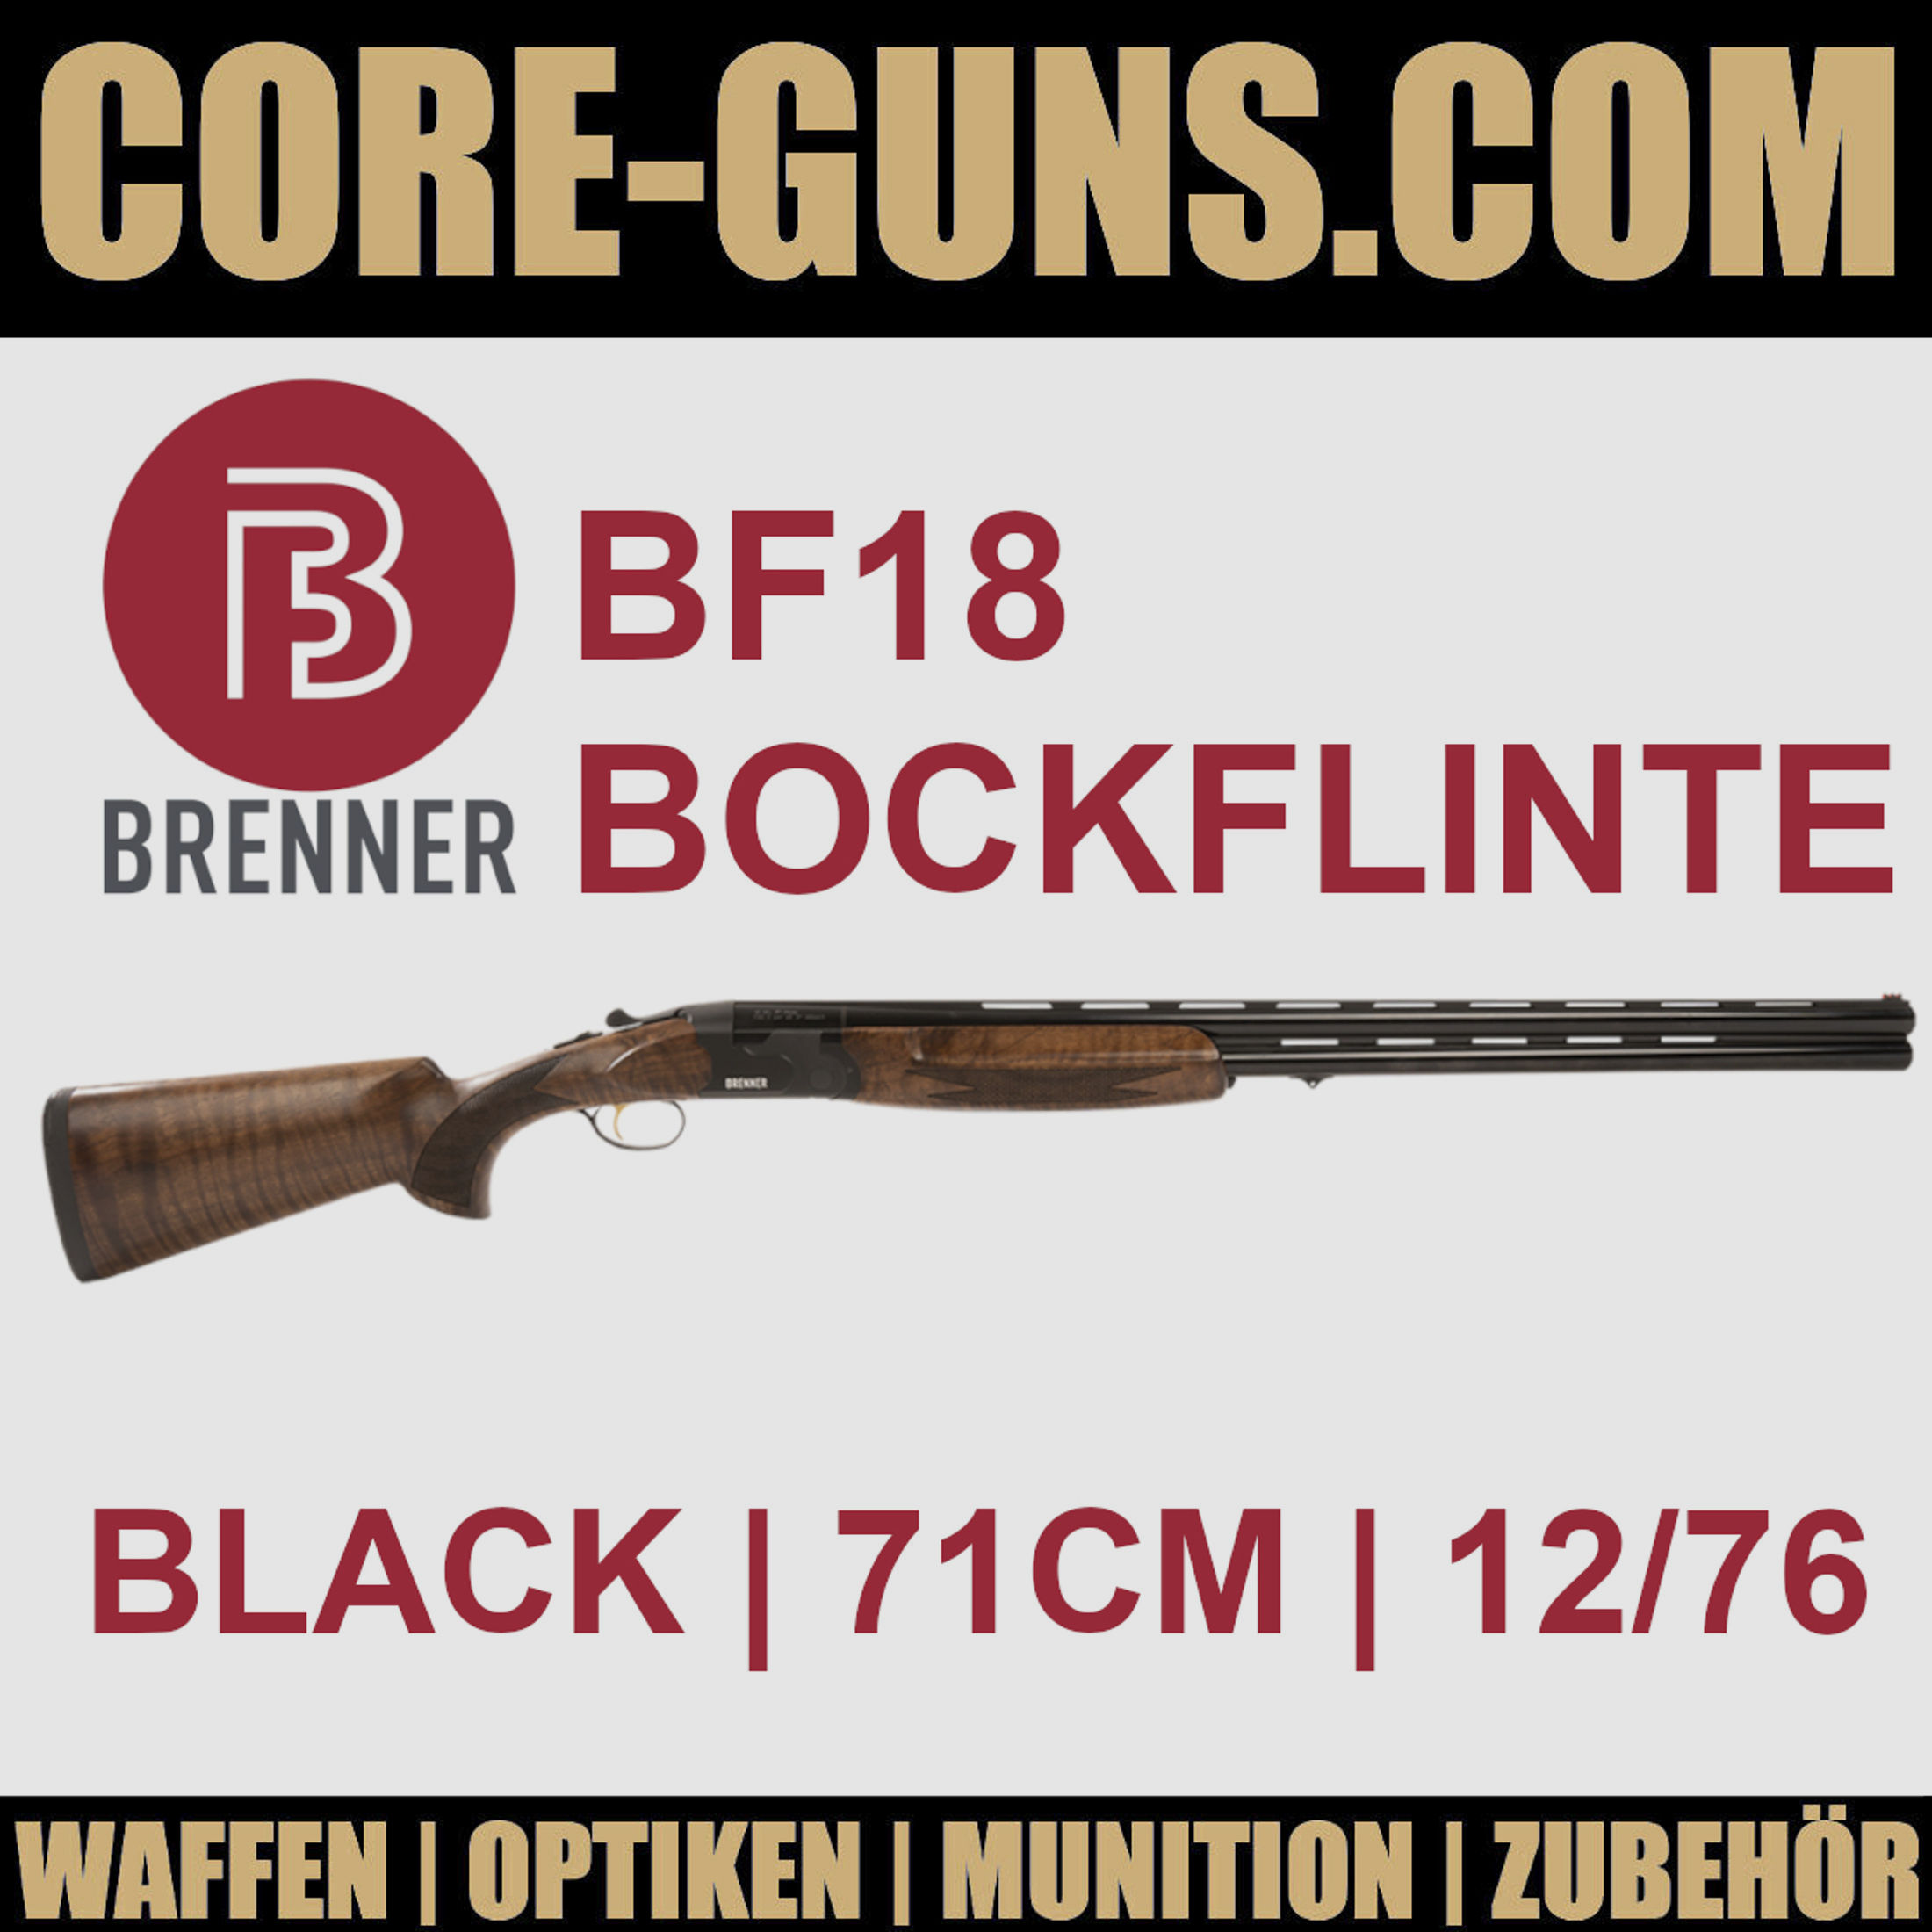 Brenner BF18 black 71cm Brenner Bockflinte Kaliber 12/76